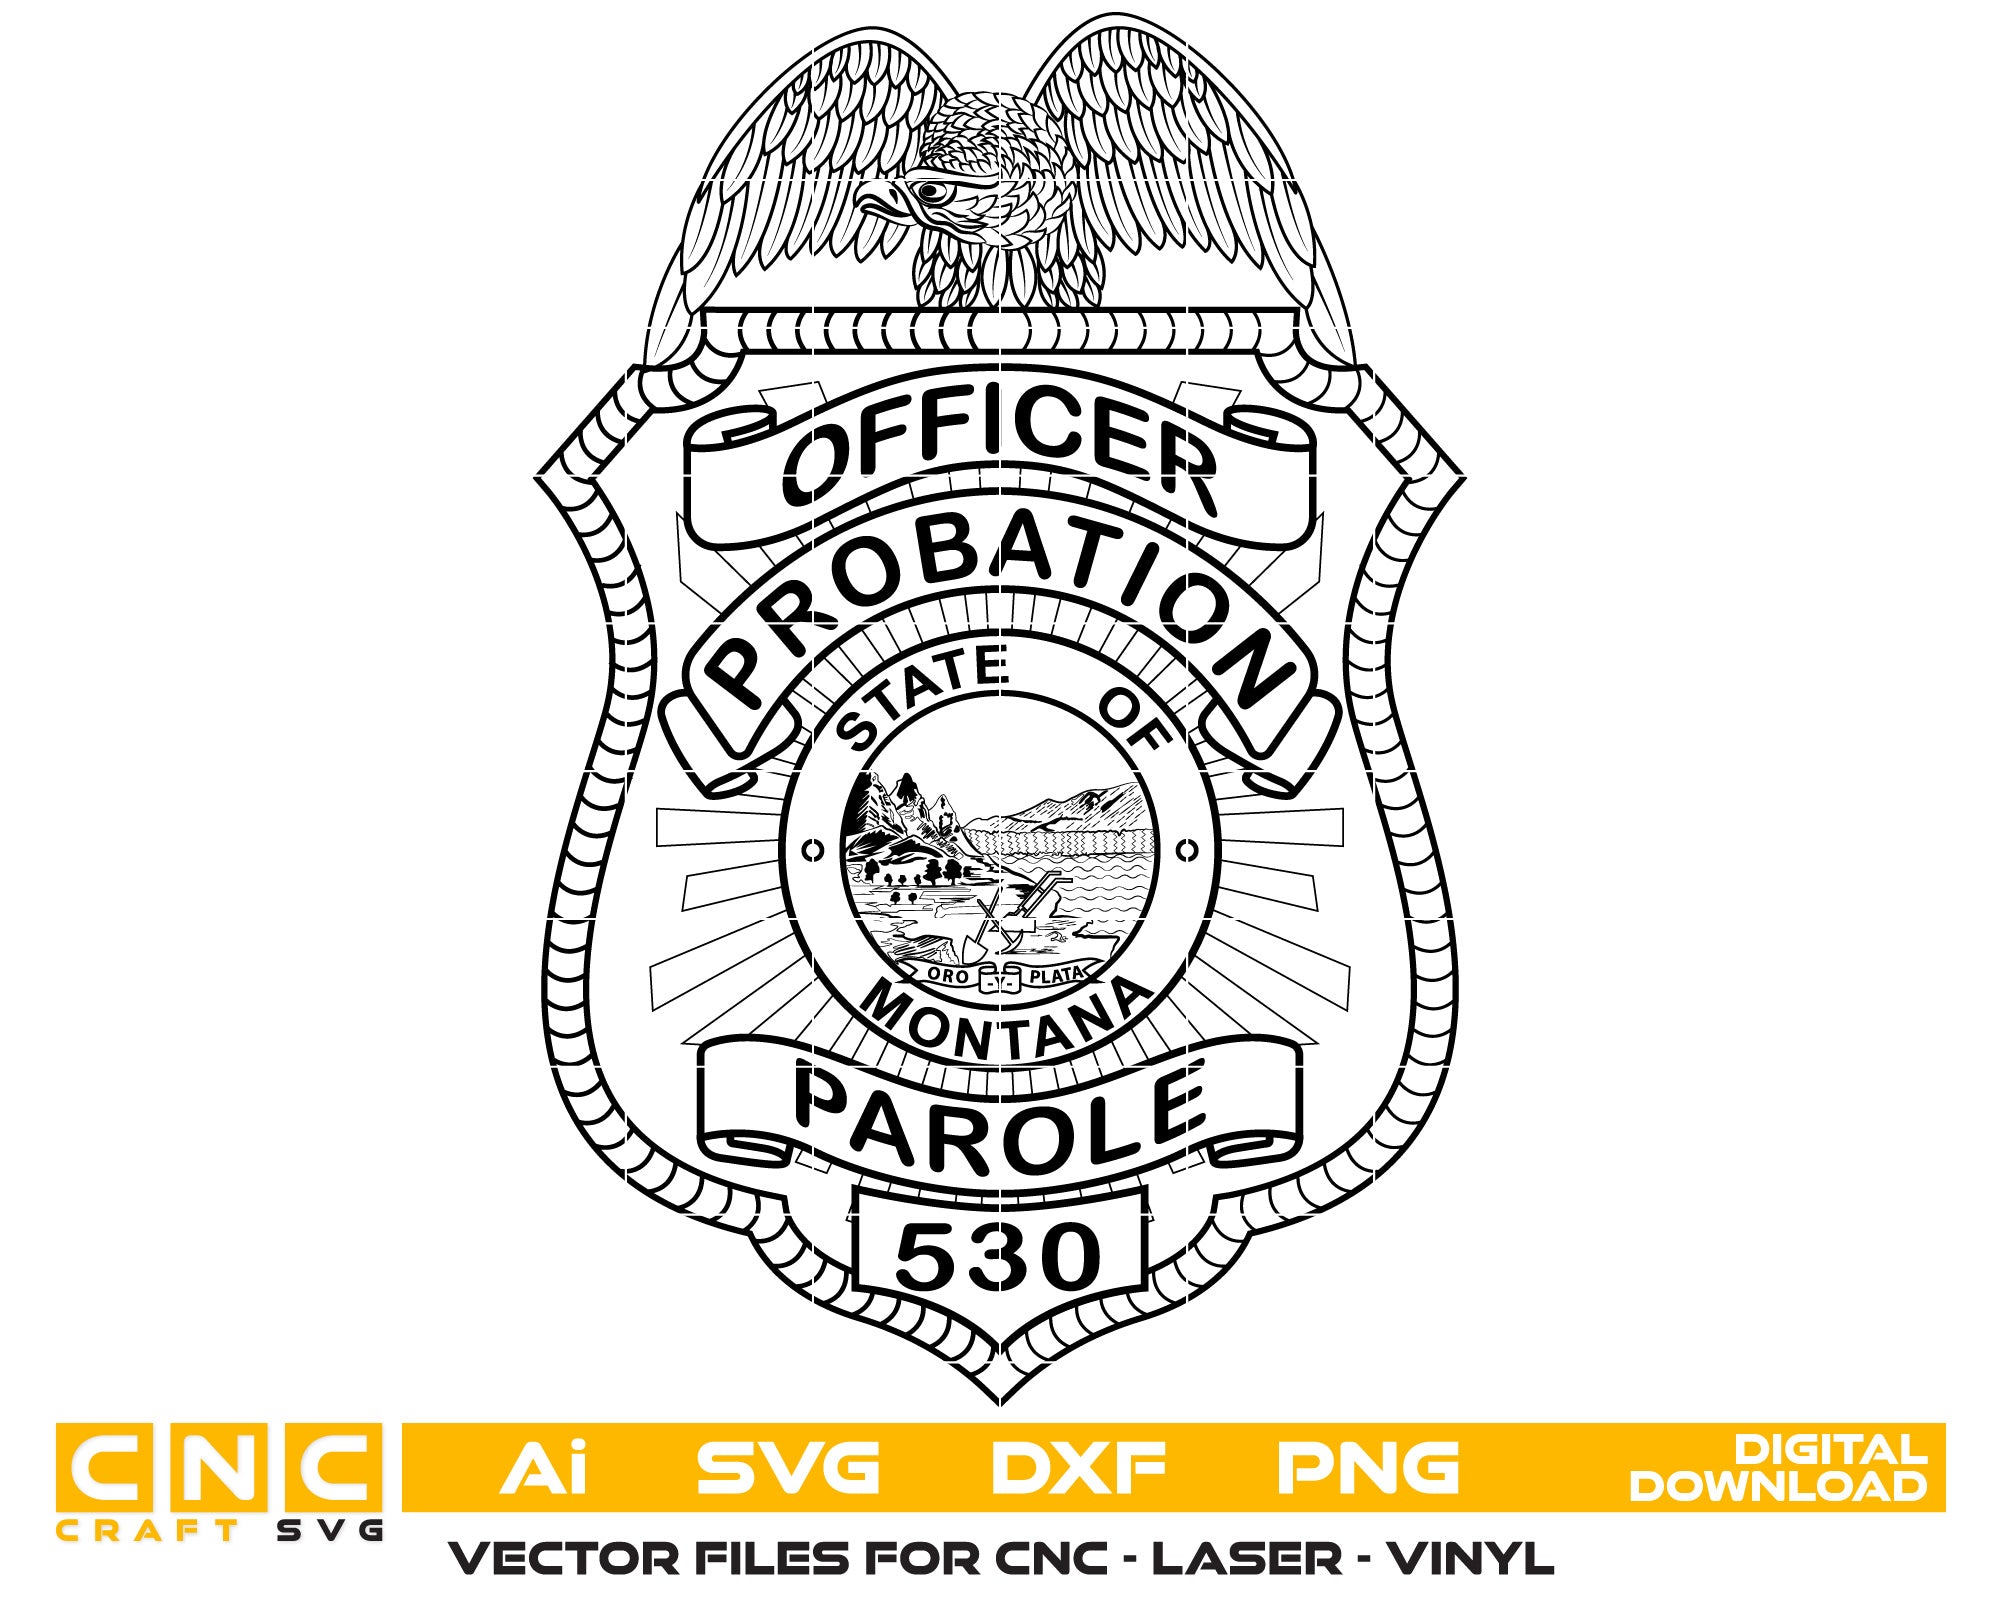 Montana Parol Probation Officer Badge Vector Art, Ai,SVG, DXF, PNG, Digital Files